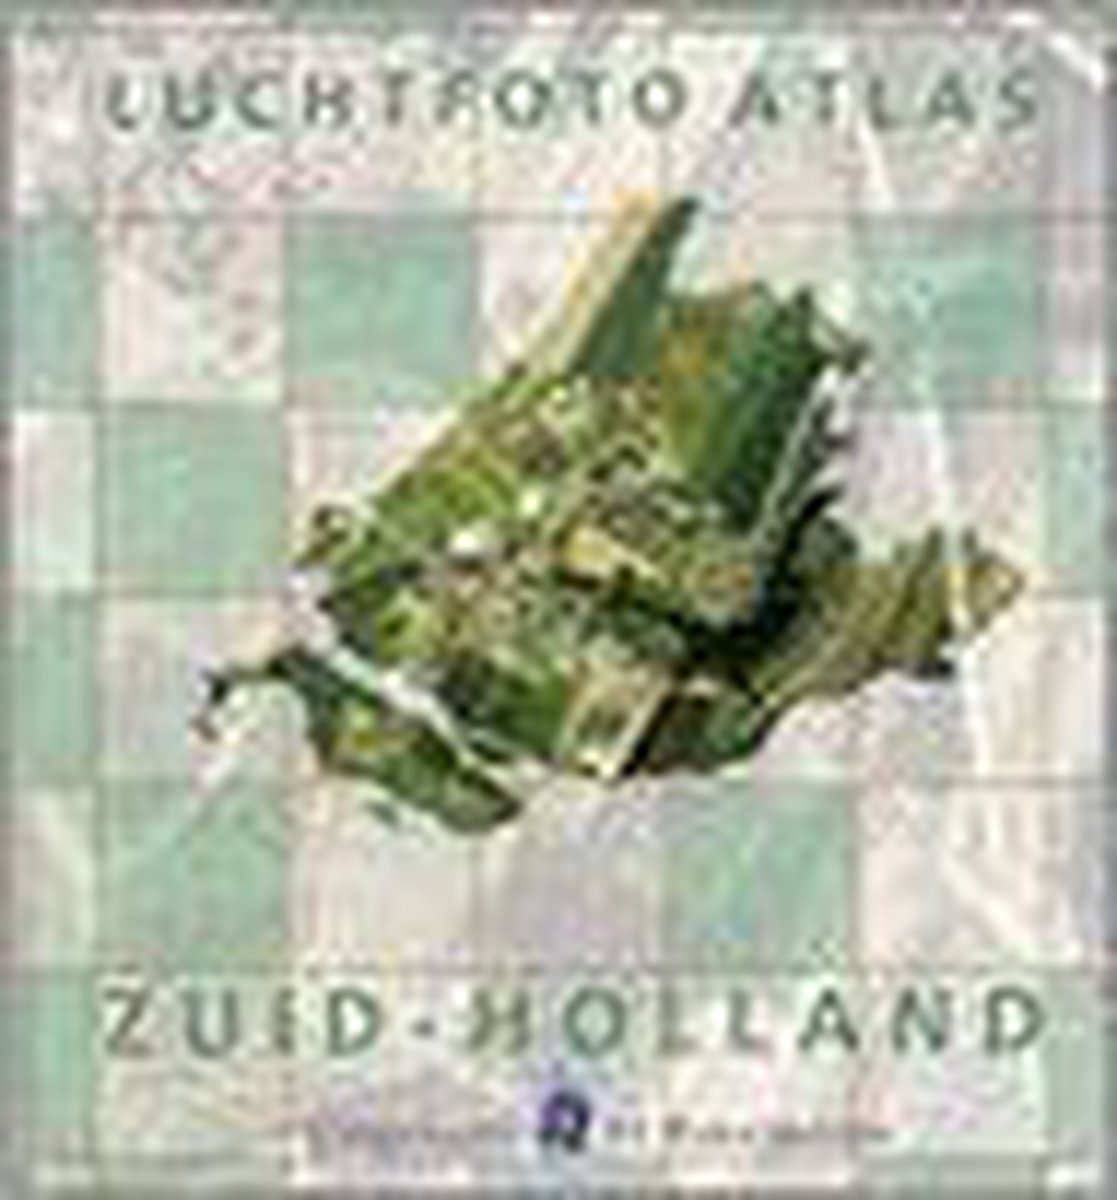 Luchtfoto-Atlas Zuid-Holland